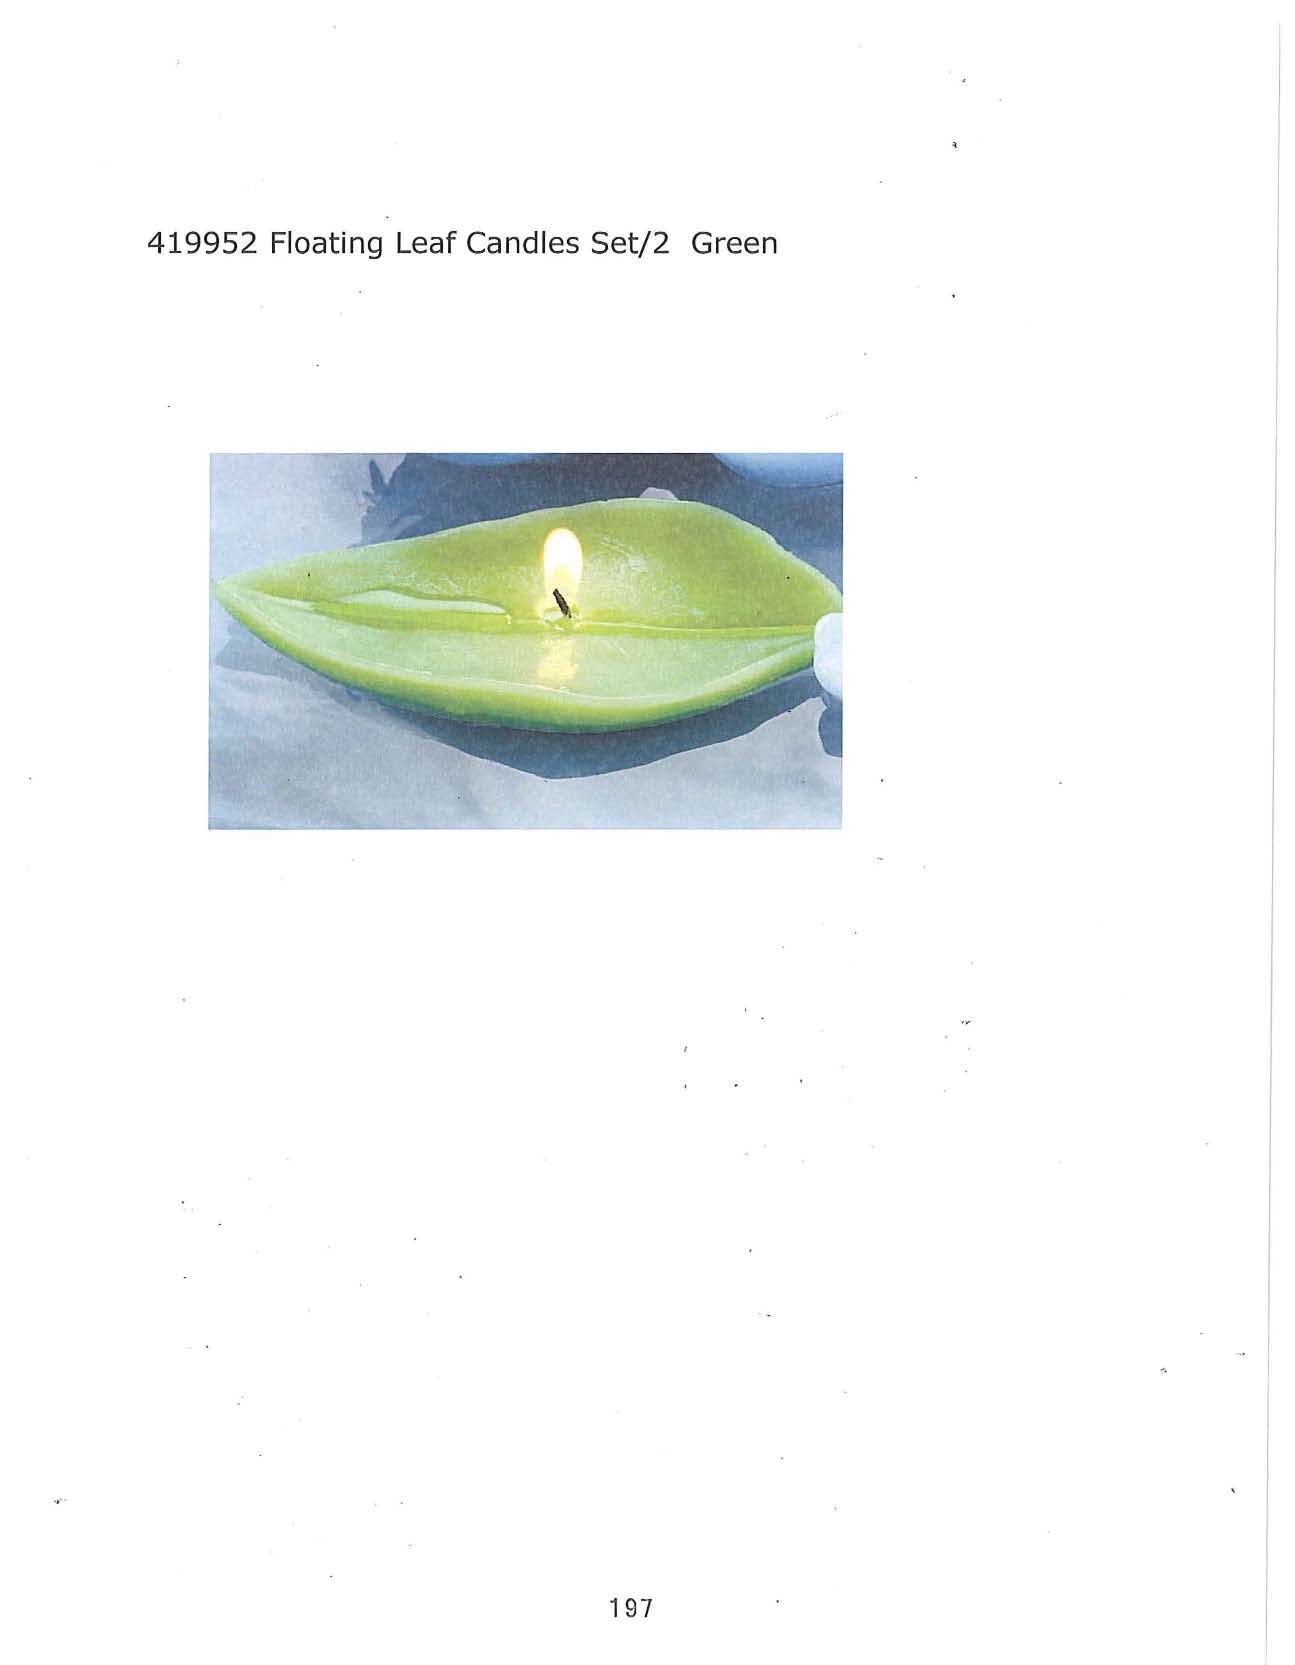 Floating Leaf Candle set/2 - Green